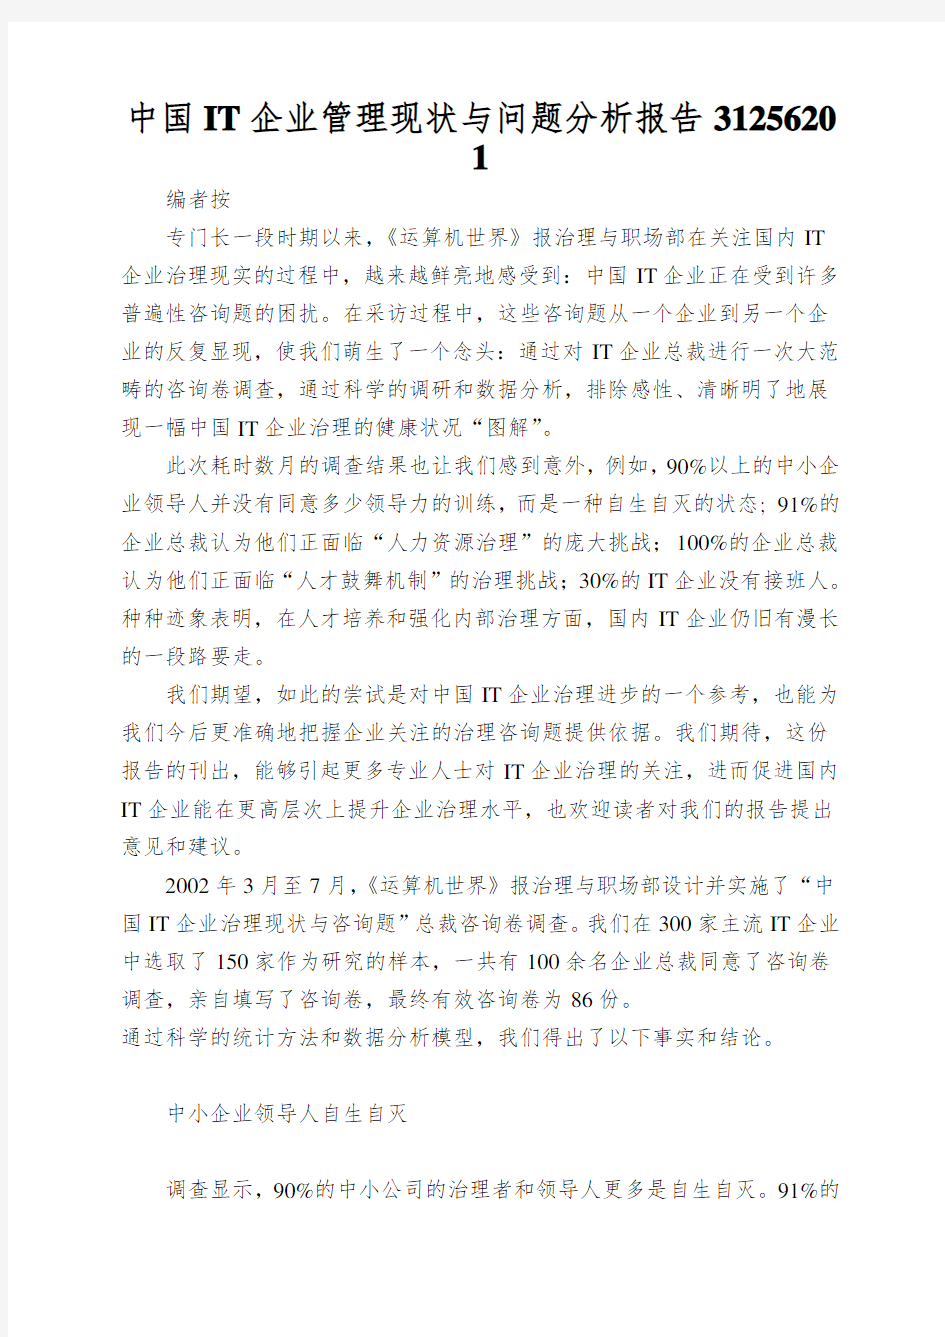 中国IT企业管理现状与问题分析报告31256201